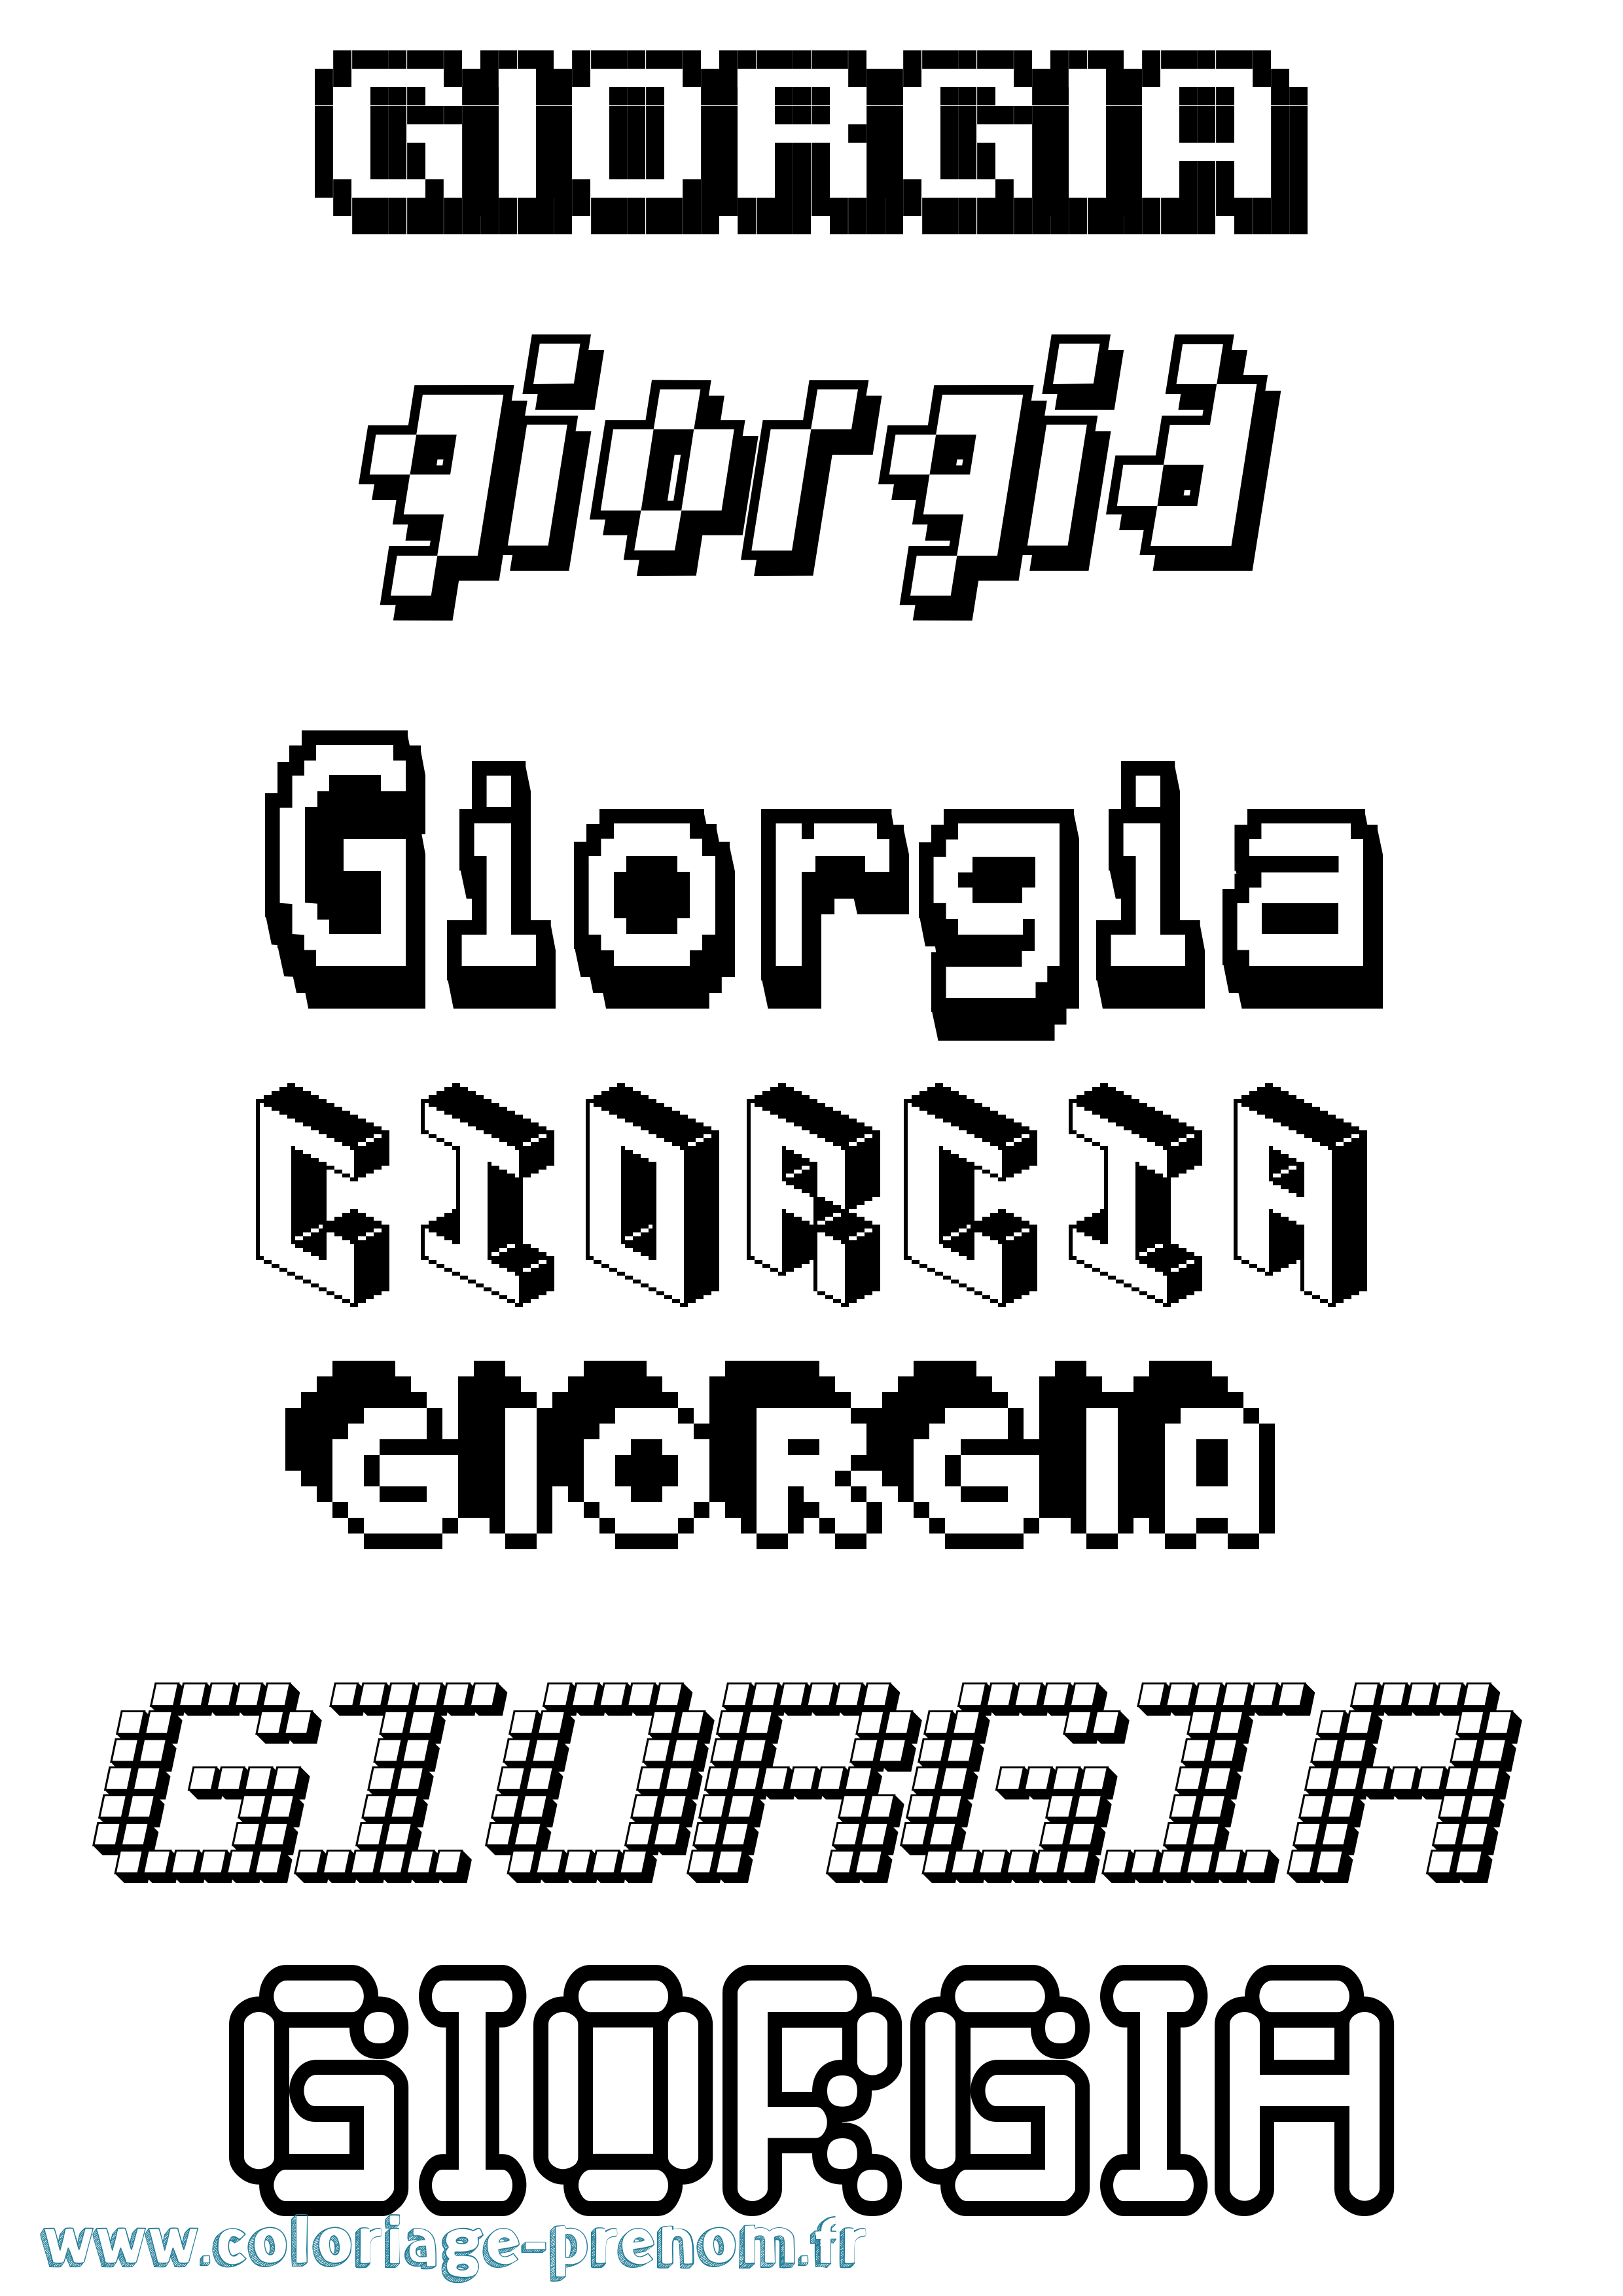 Coloriage prénom Giorgia Pixel